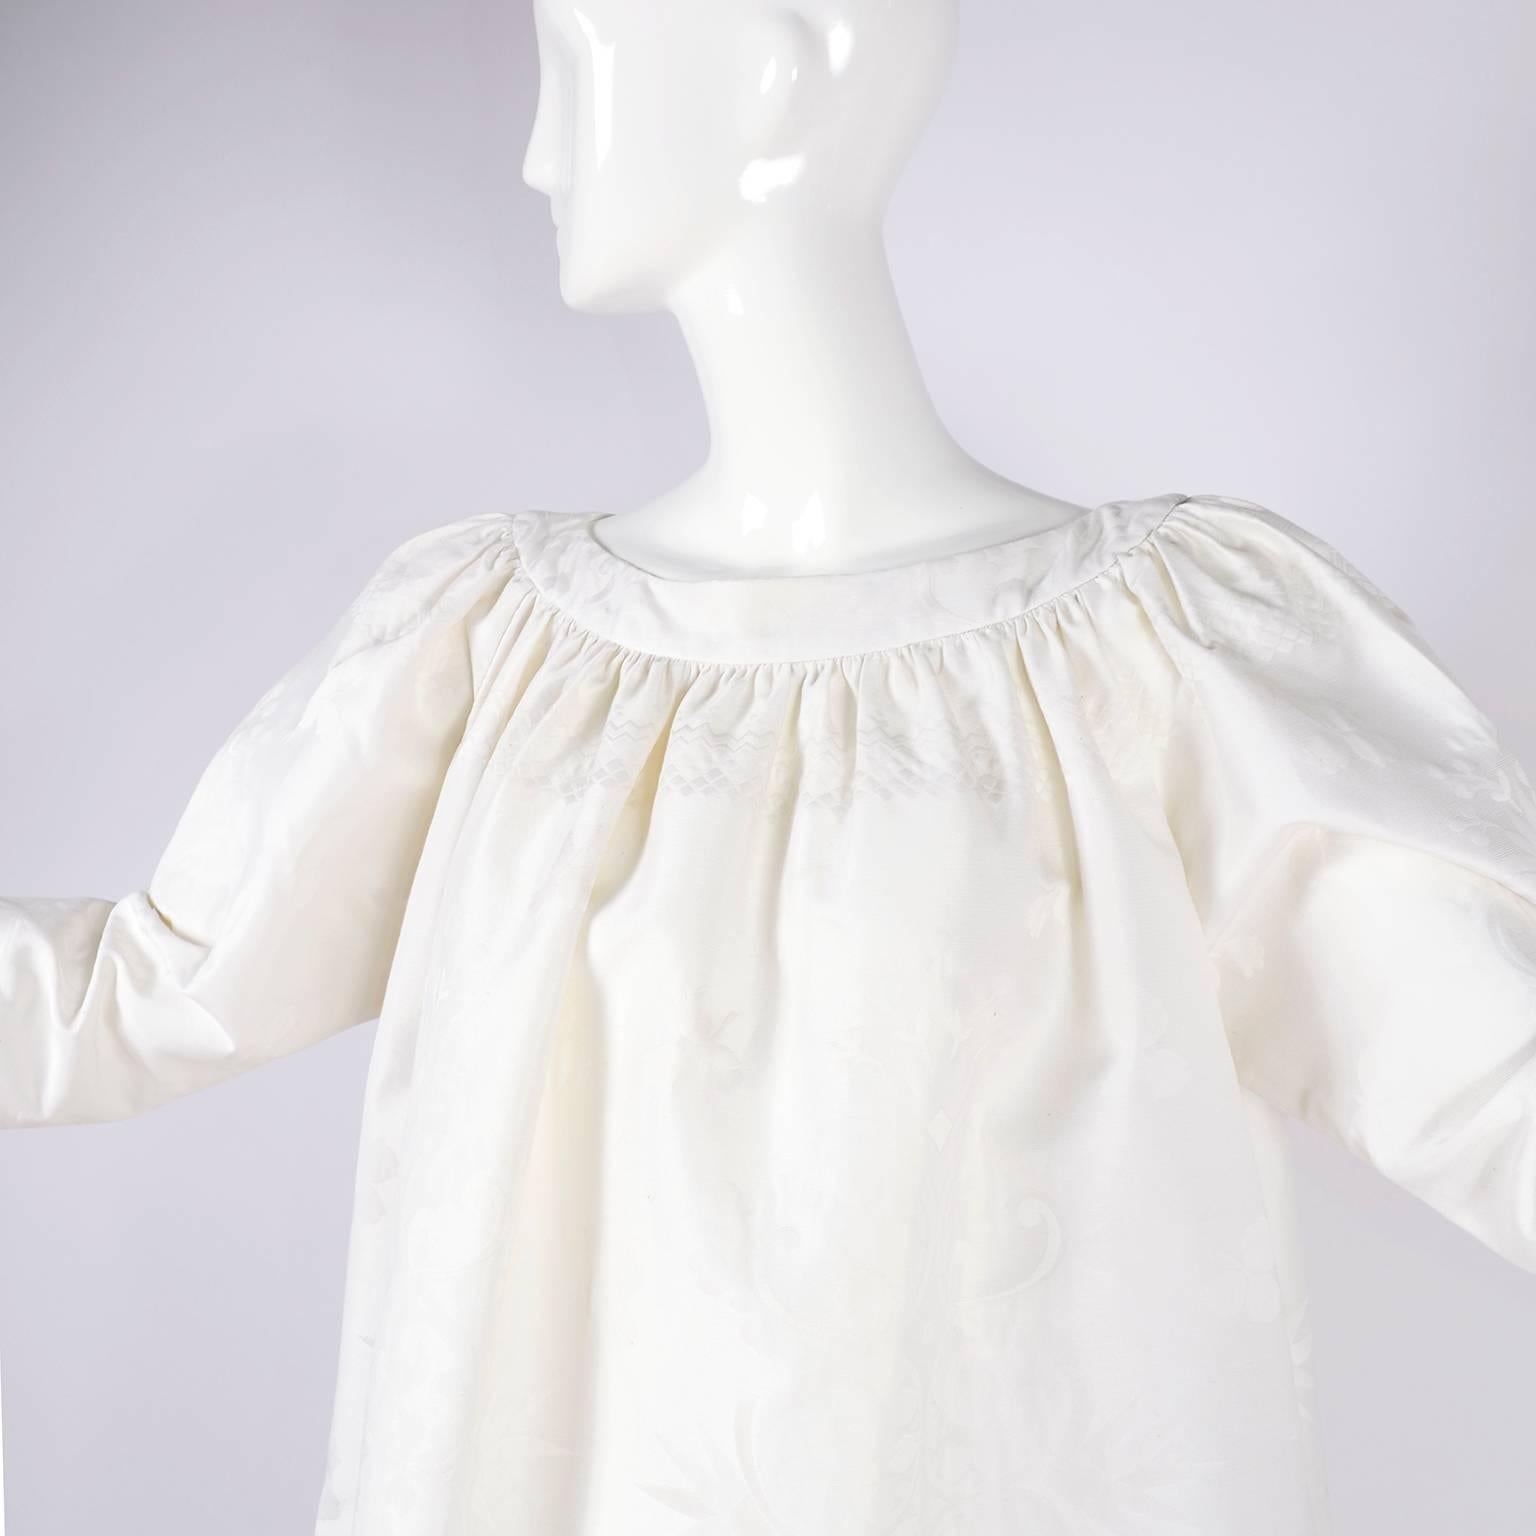 Dies ist ein fabelhaftes Sommerkleid oder Tunika von Christian Lacroix aus den 1980er Jahren in weißem Leinen. Obwohl es als französische Größe 38 angegeben ist, fällt dieses Kleid übergroß aus und ist fast eine Einheitsgröße. Dieses wunderbare